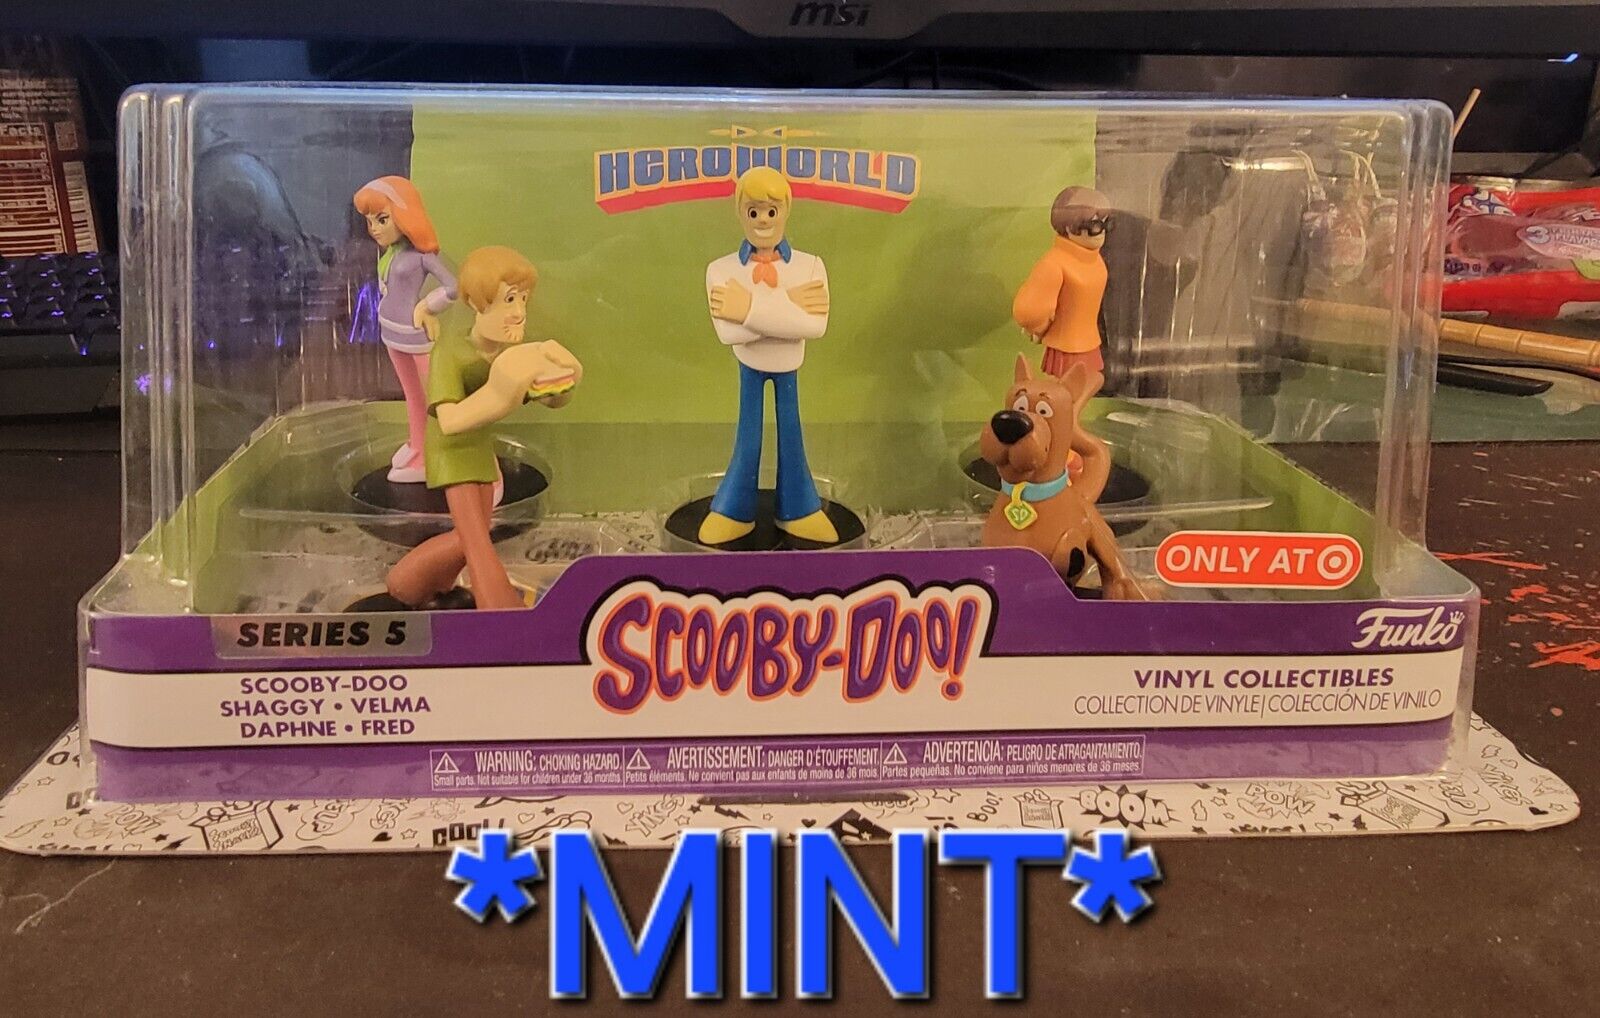 Funko Hero World Scooby Doo Target Exclusive Vinyl Collectible Figures Series 5